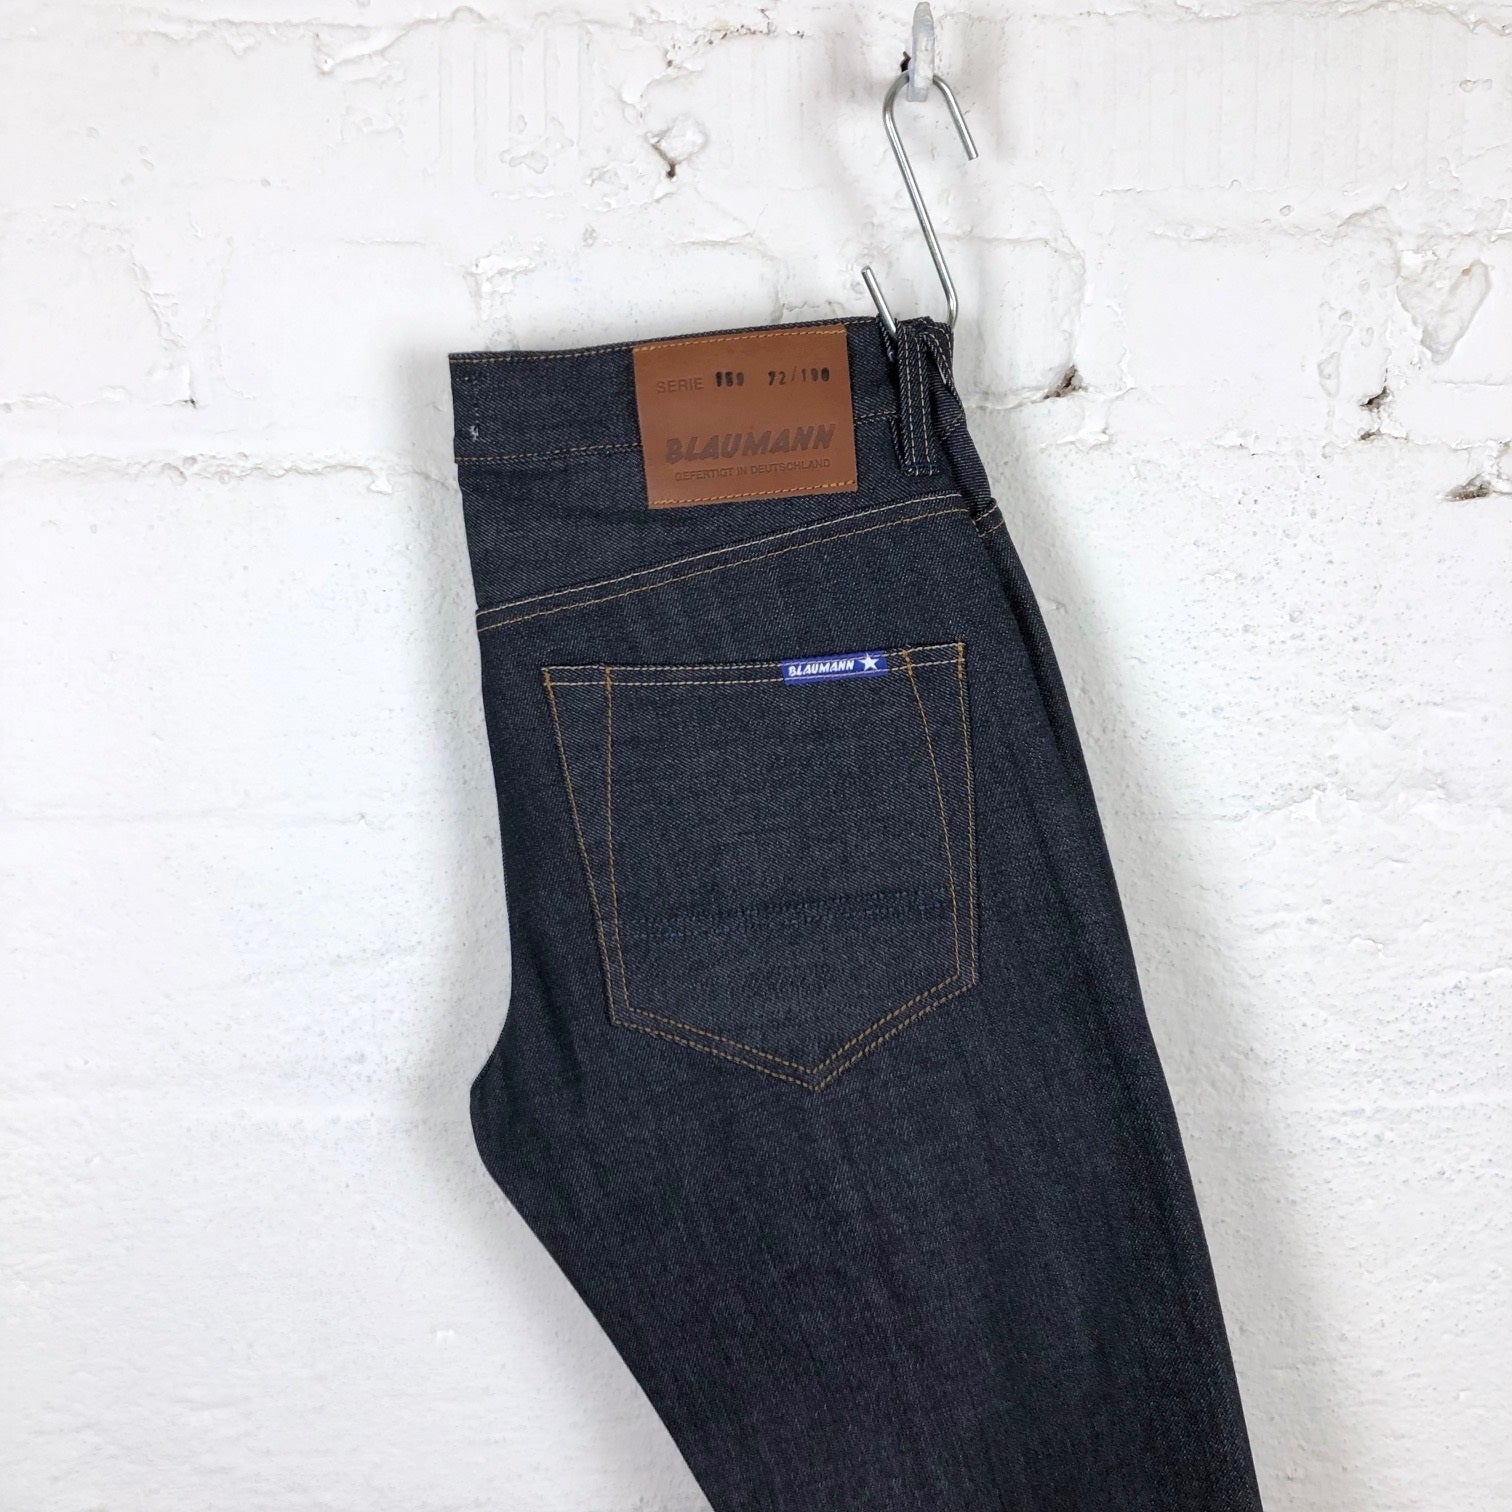 https://stuf-f.com/cdn/shop/products/blaumann-jeanshosen-schmaler-blaumann-deutscher-denim-5.jpg?v=1685514272